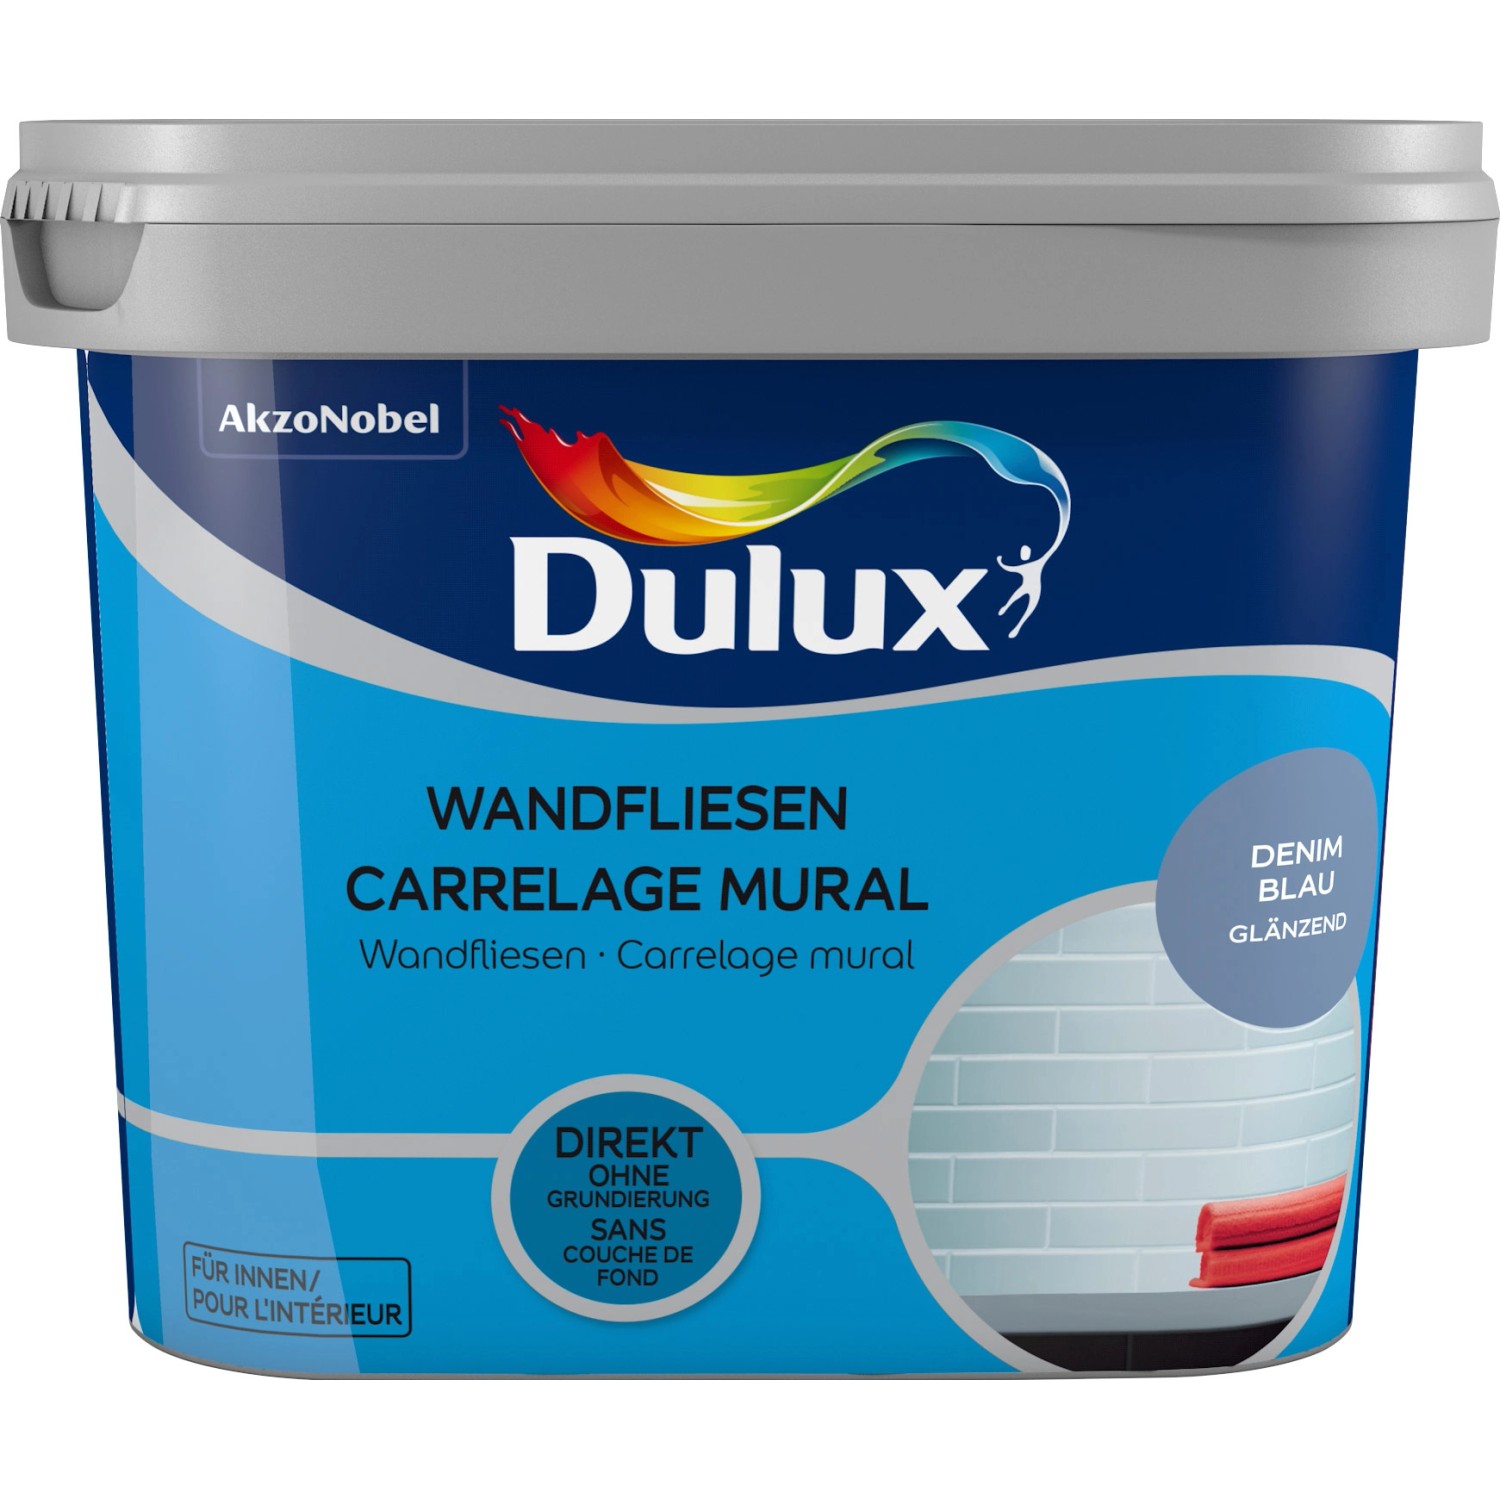 Dulux Fresh Up Wandfliesenlack Glänzend Denim Blue 750 ml